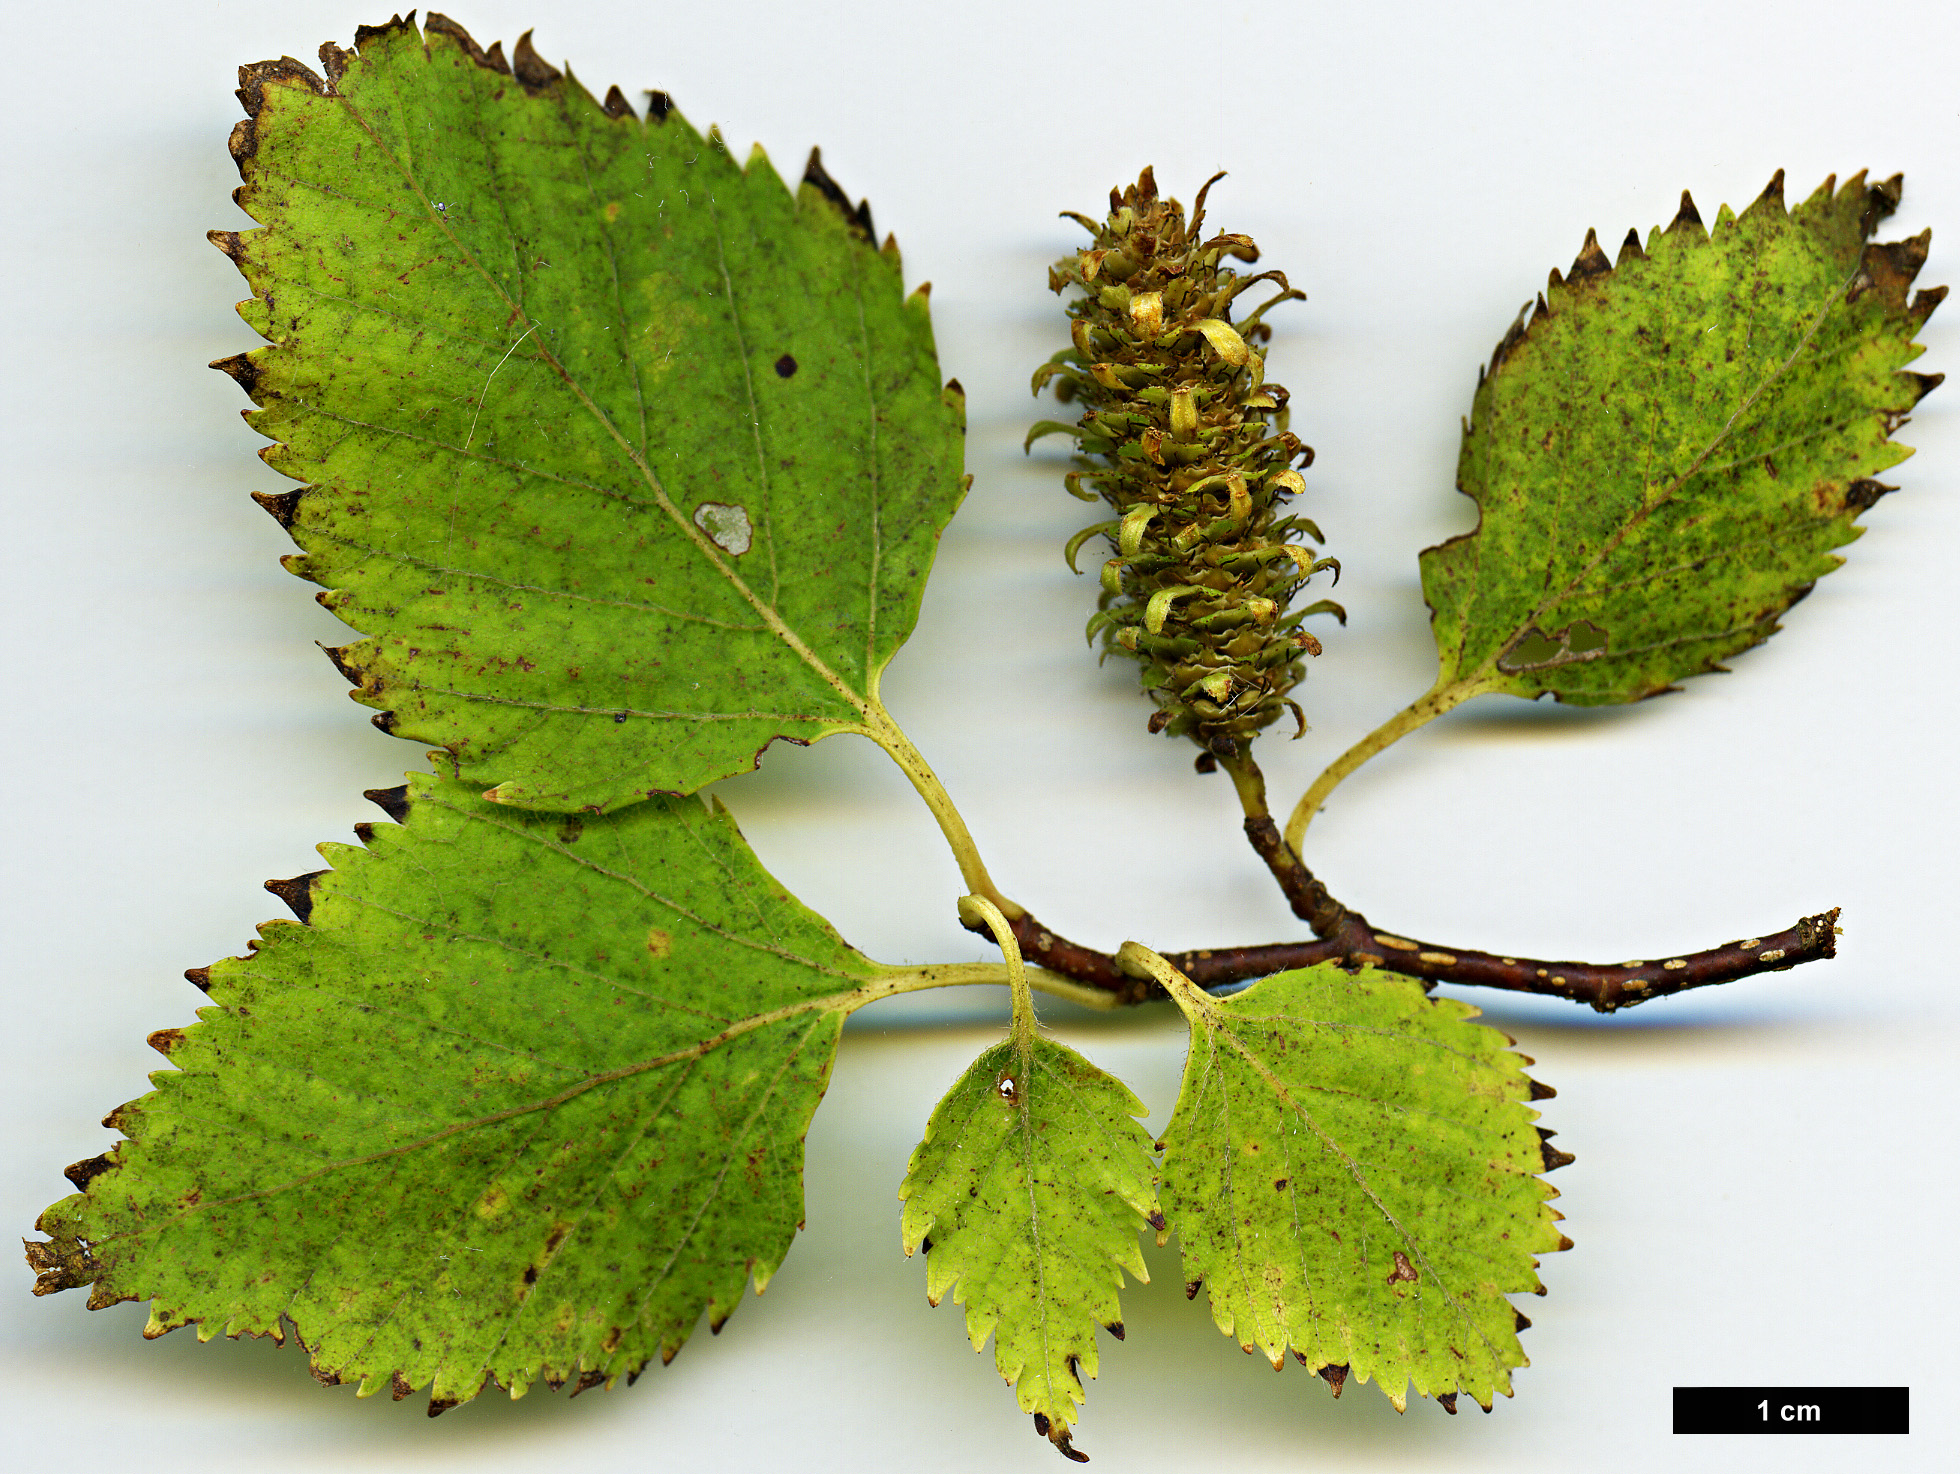 High resolution image: Family: Betulaceae - Genus: Betula - Taxon: ermanii - SpeciesSub: var. ermanii